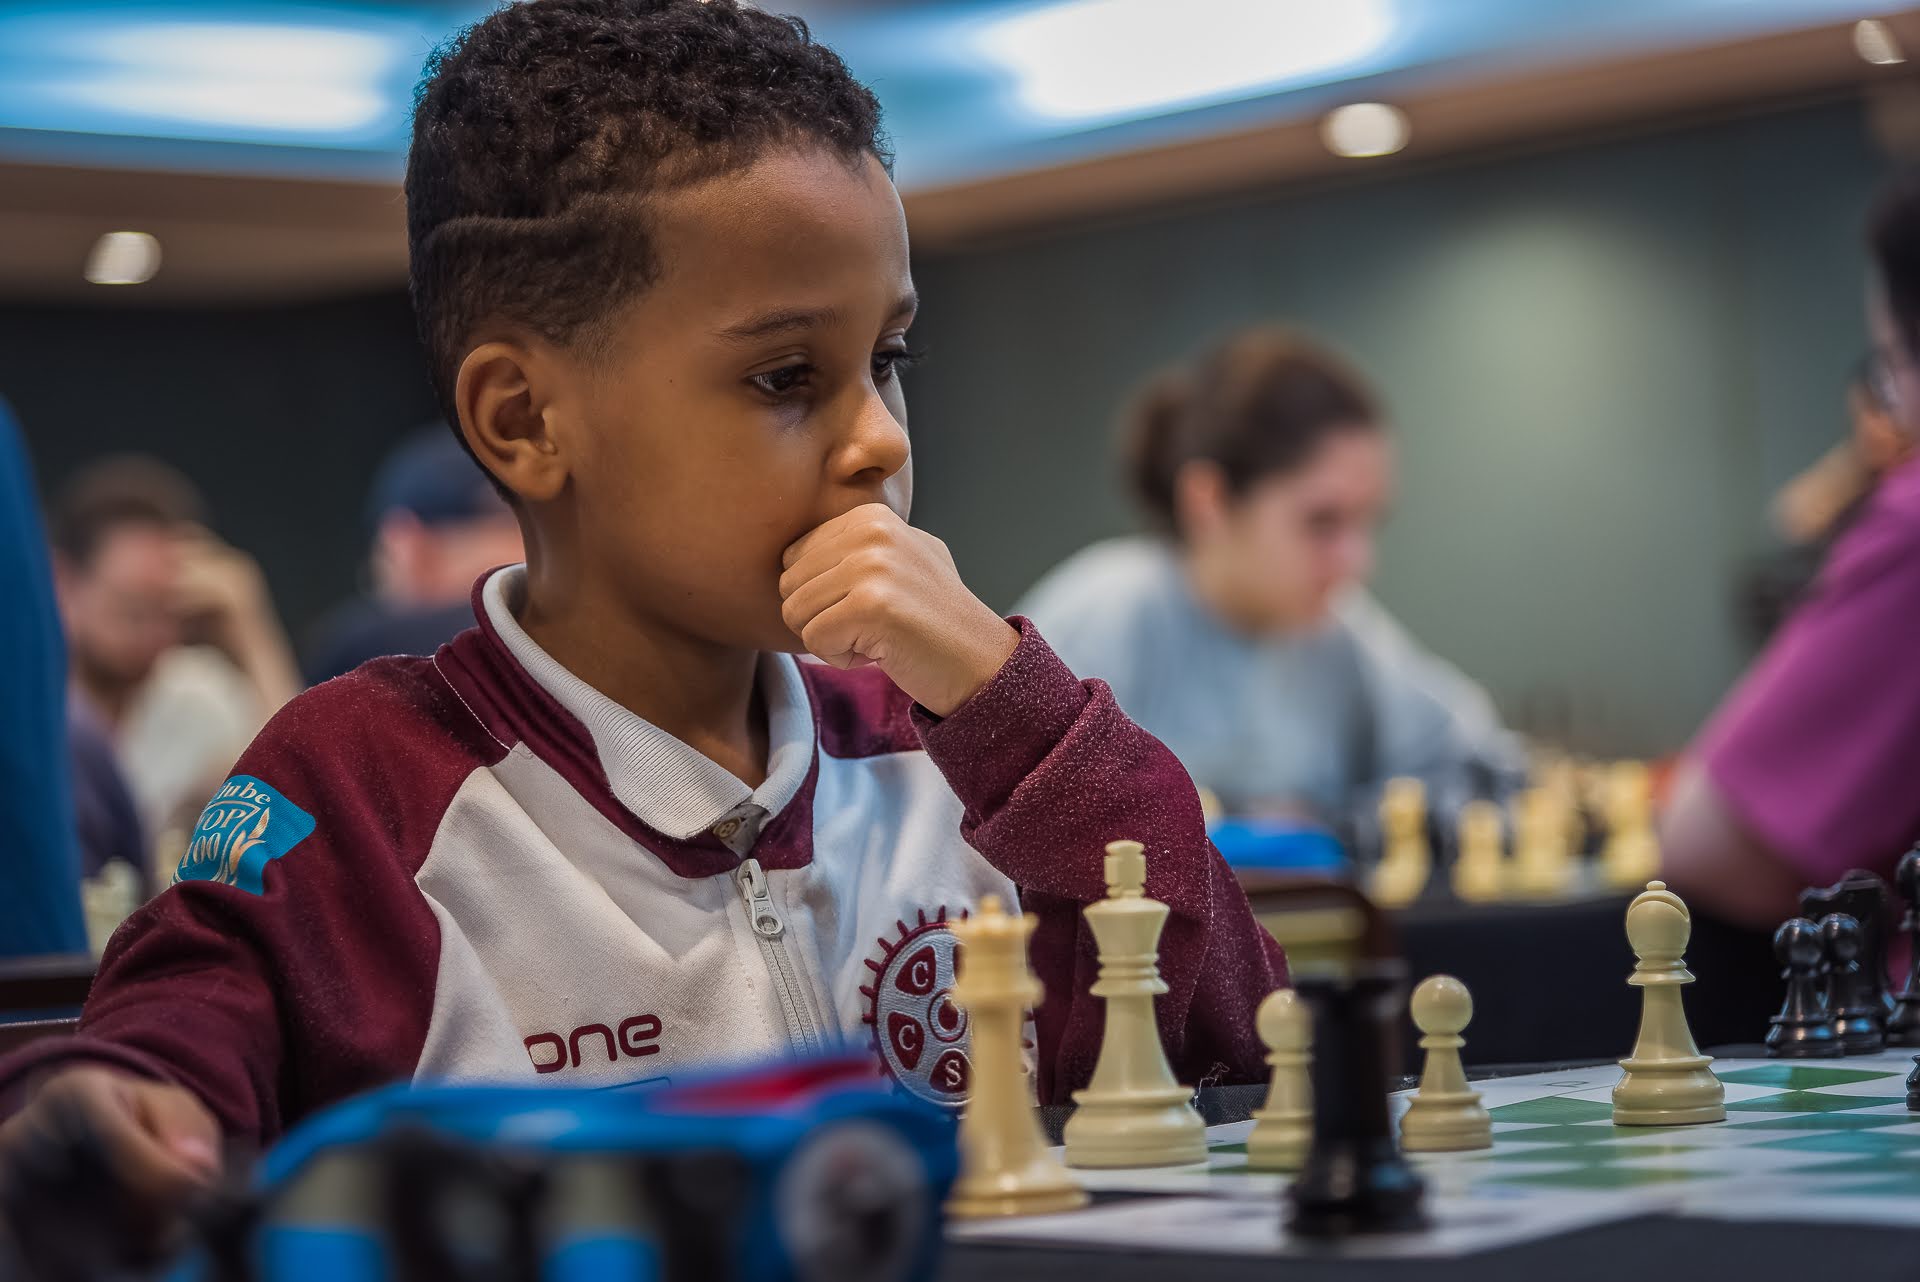 Atleta do Clube dos Funcionários, de apenas 8 anos, lidera o ranking  mundial de Xadrez - Jornal Folha do Aço